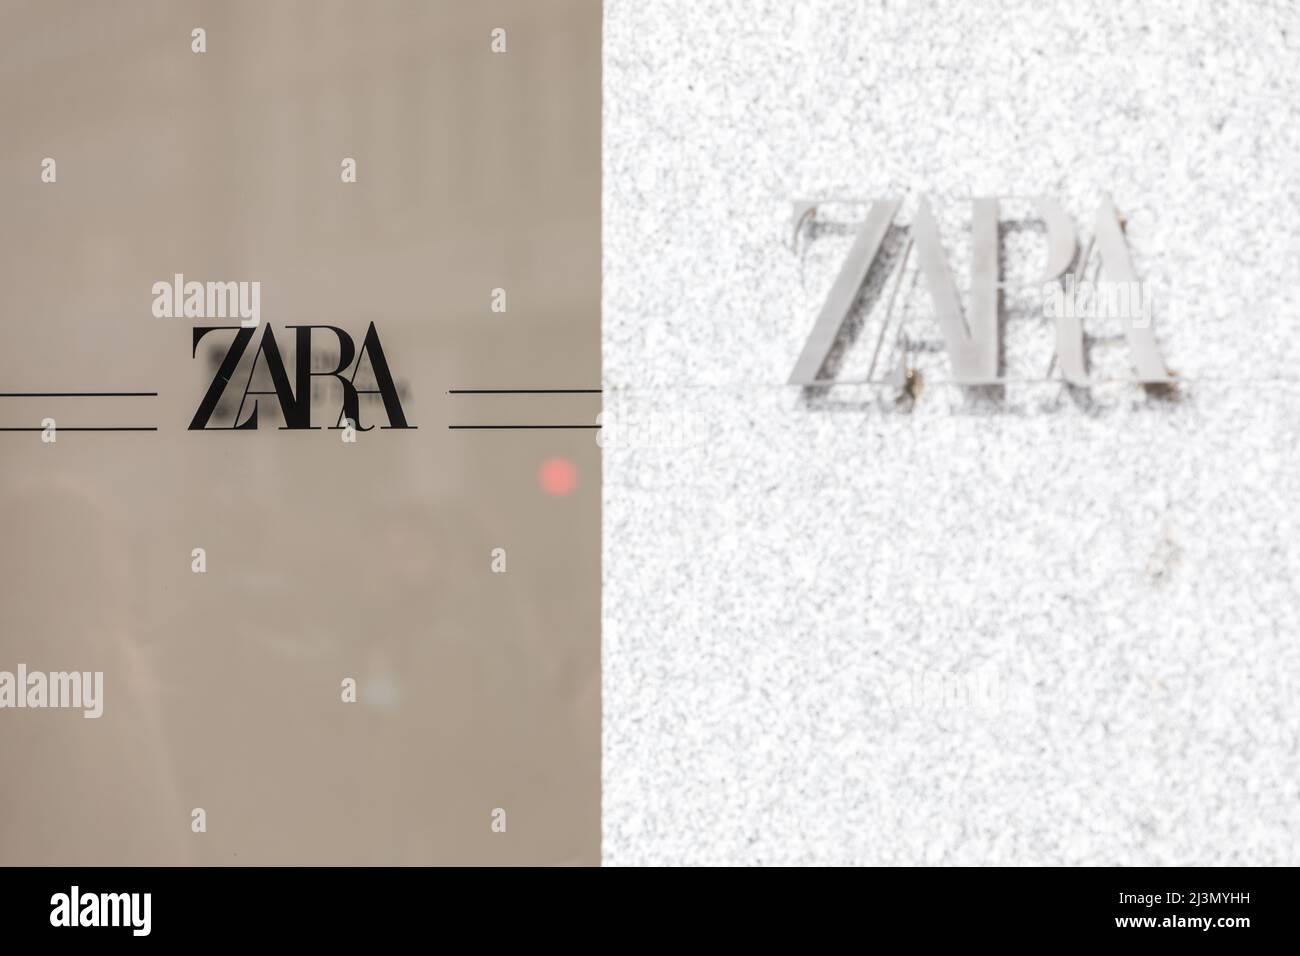 Logo des Bekleidungs- und Zubehörladens von Zara in Spanien. Der größte Zara-Laden der Welt. Konzept des Einkaufs, inditex, Amancio Ortega, Kleidung Stockfoto